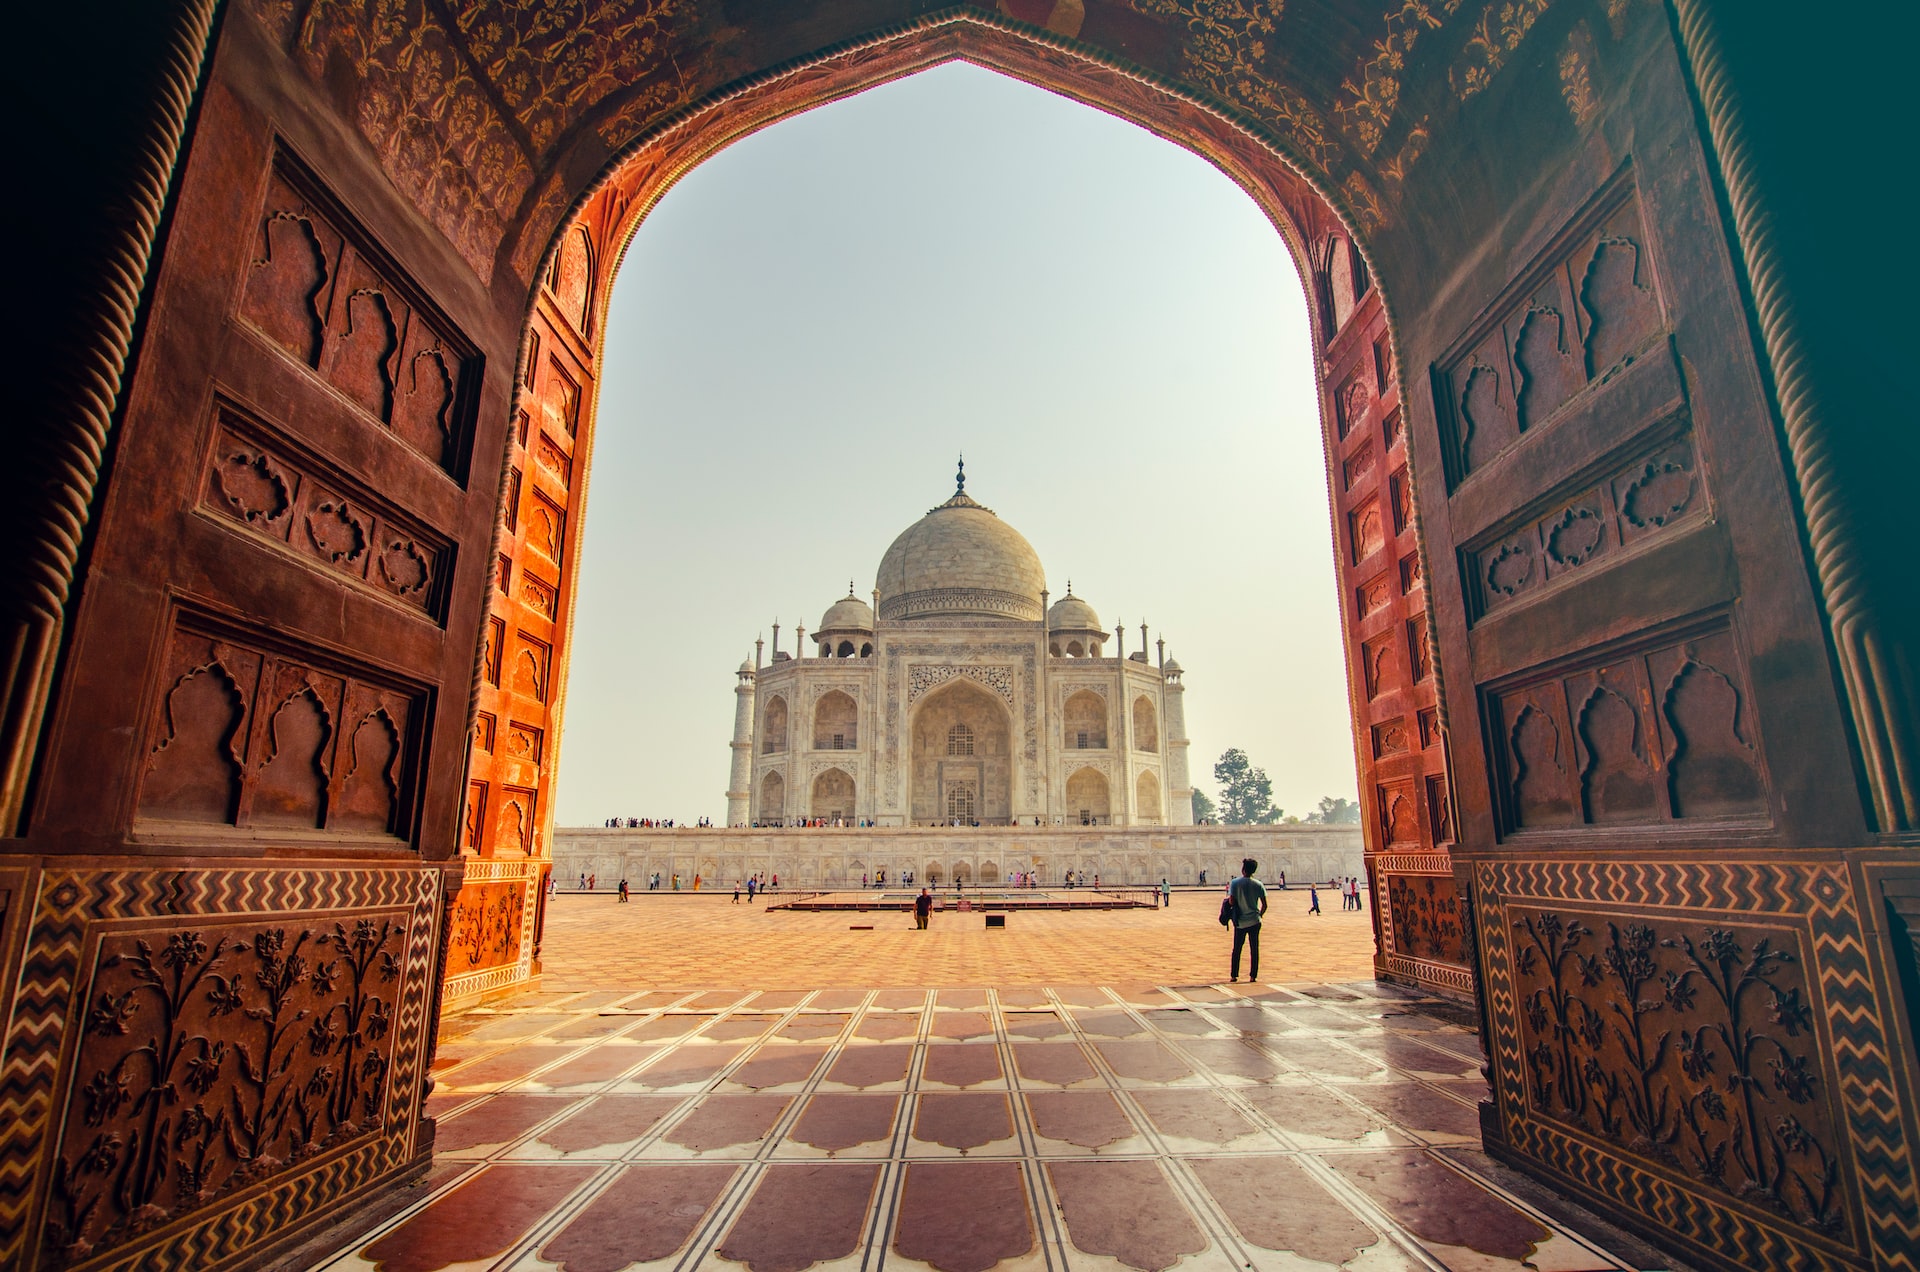 De Taj Mahal